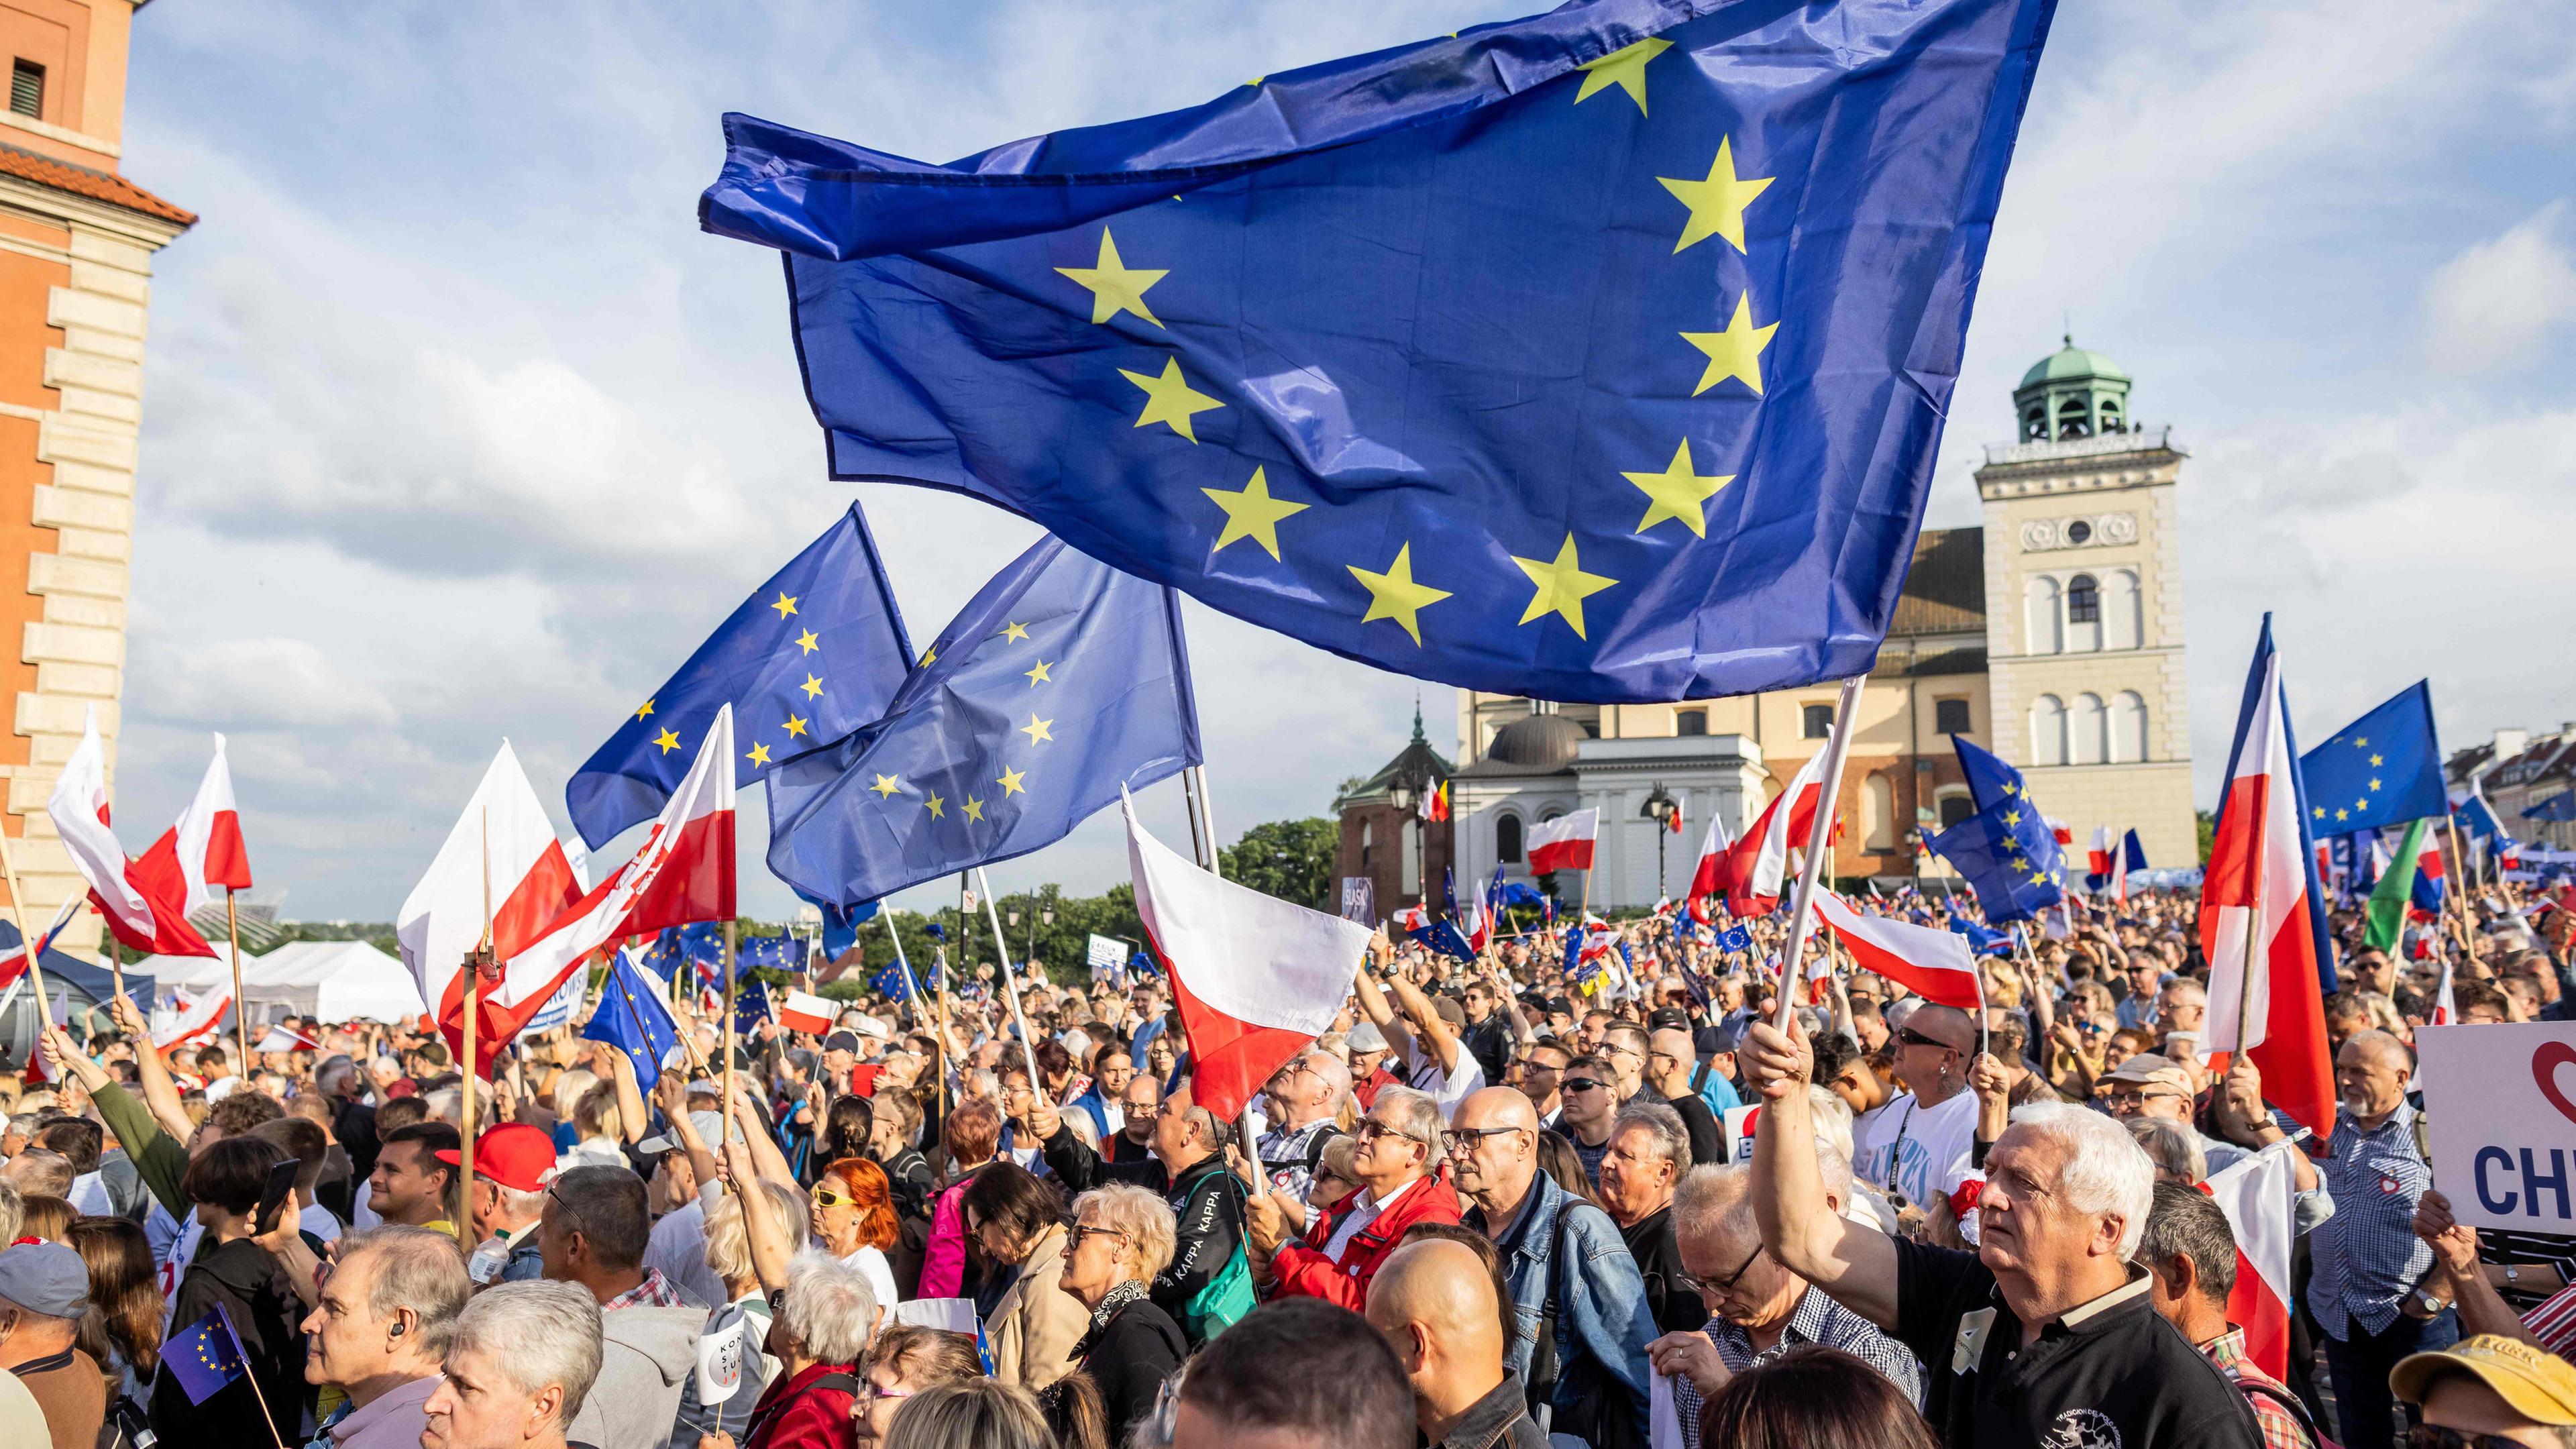 POLAND-EU-POLITICS-DEMONSTRATION